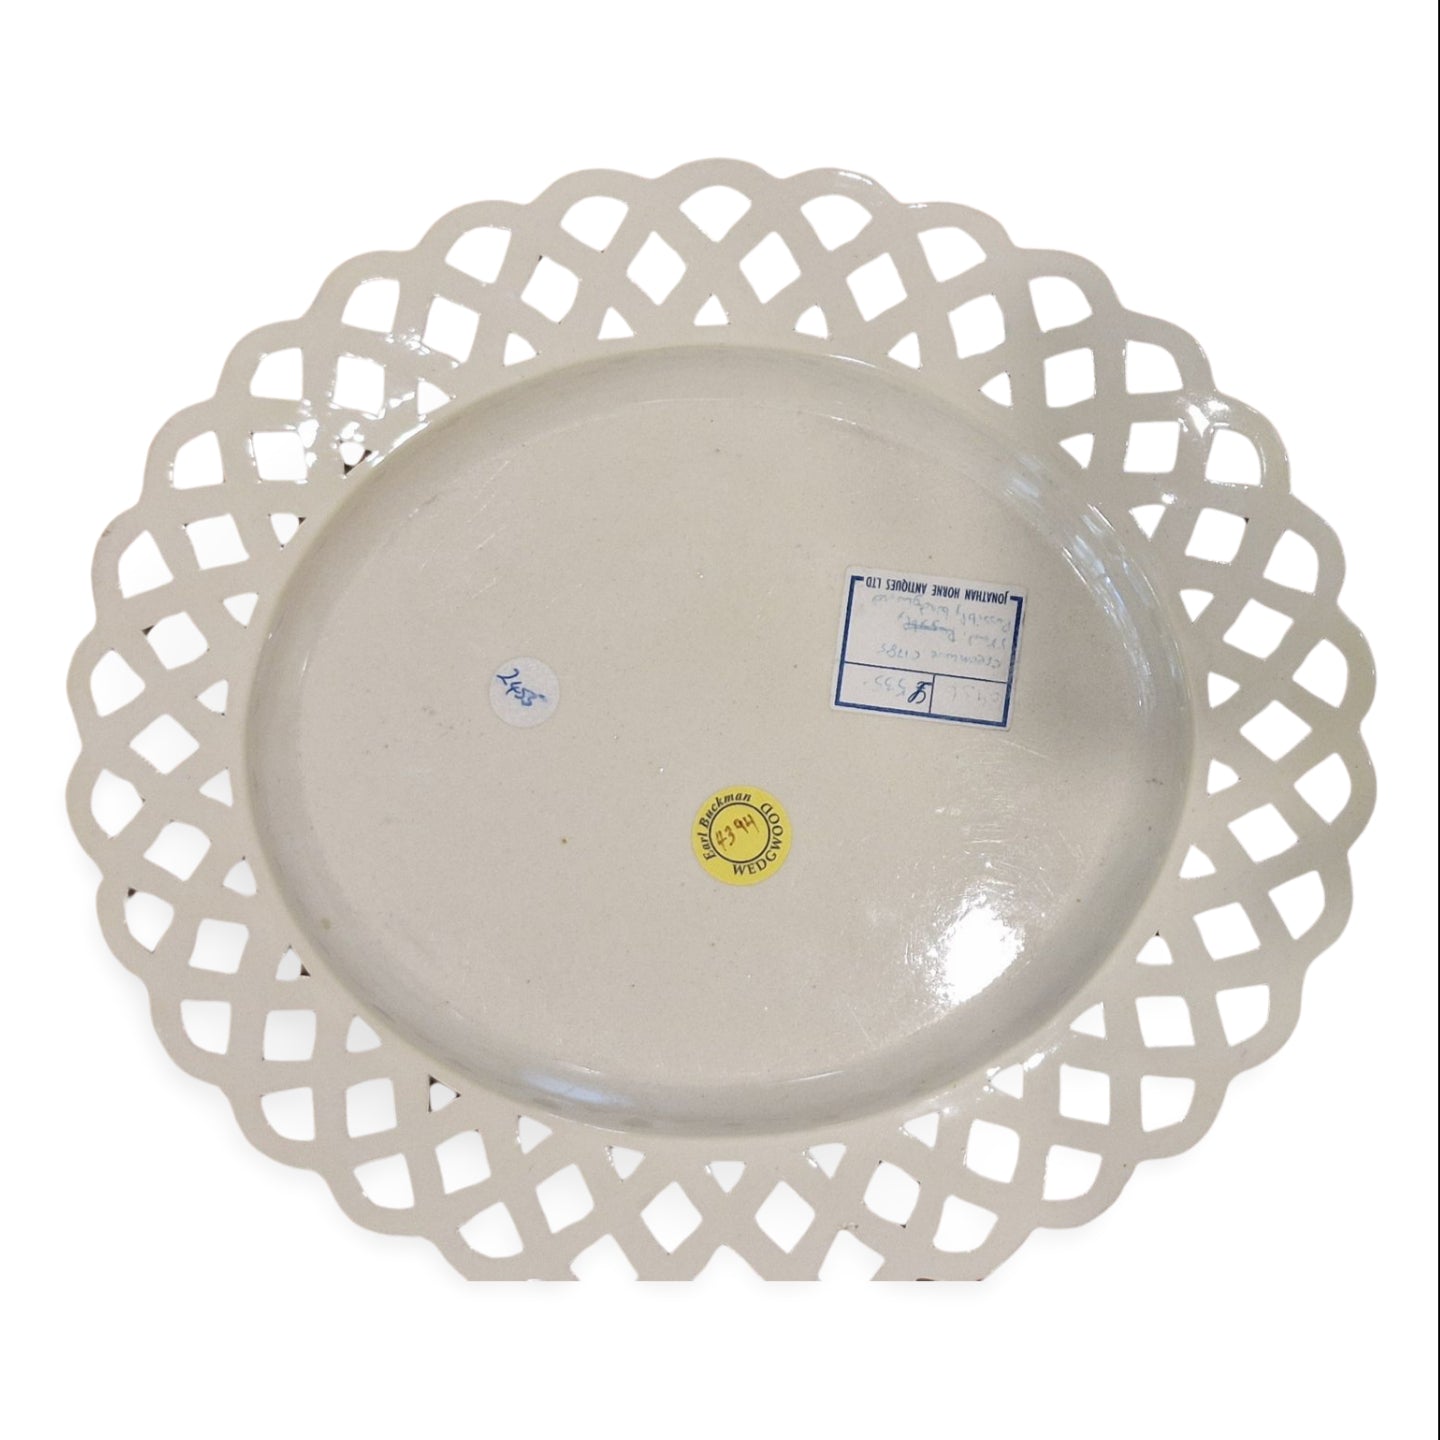 Pierced oval plate